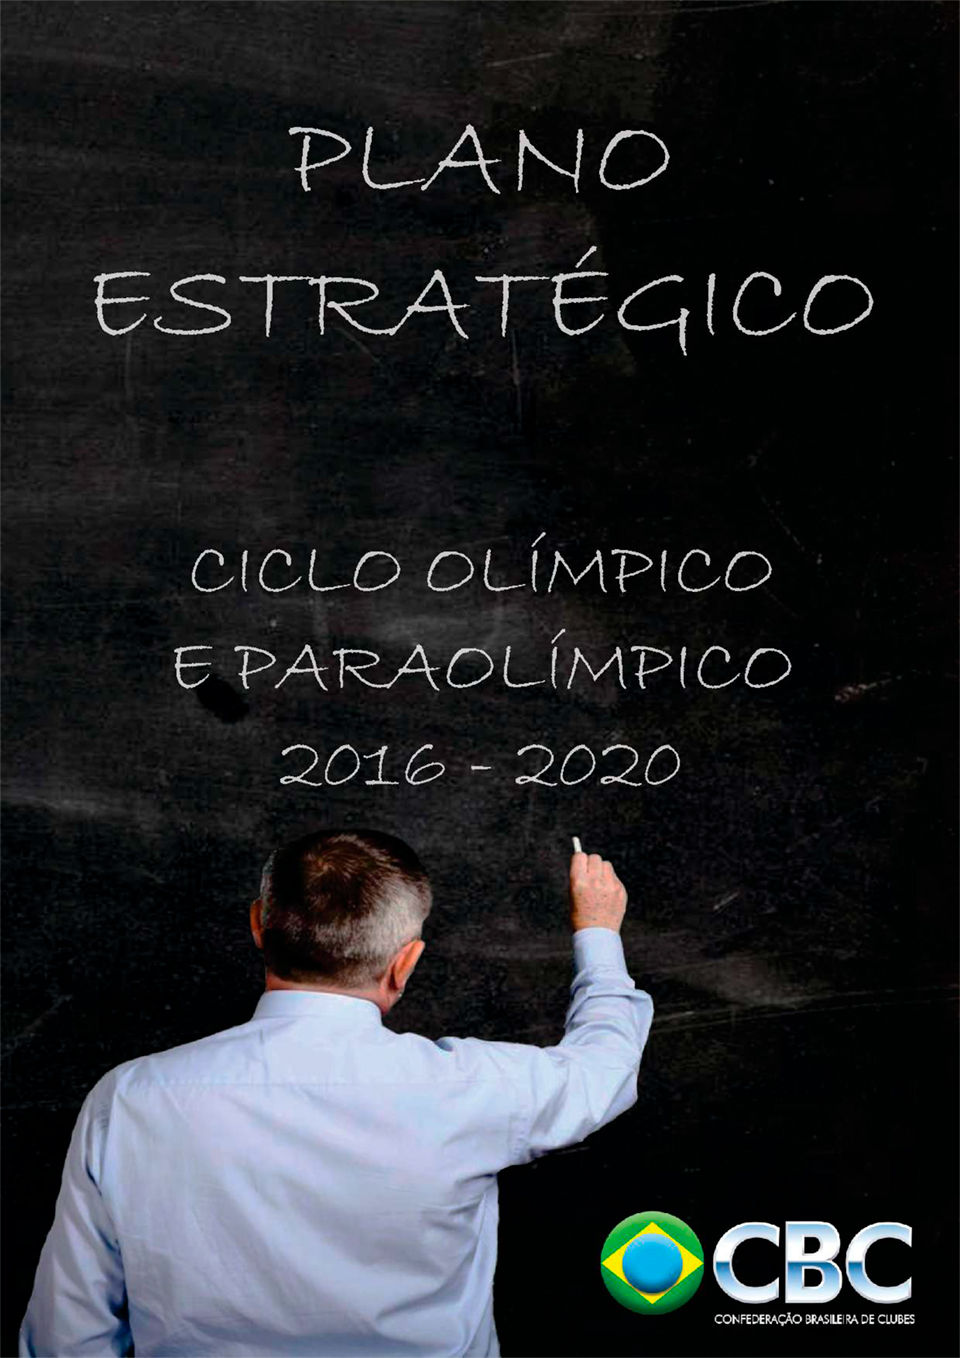 Plano Estratégico – Ciclo Olímpico e Paraolímpico 2016-2020